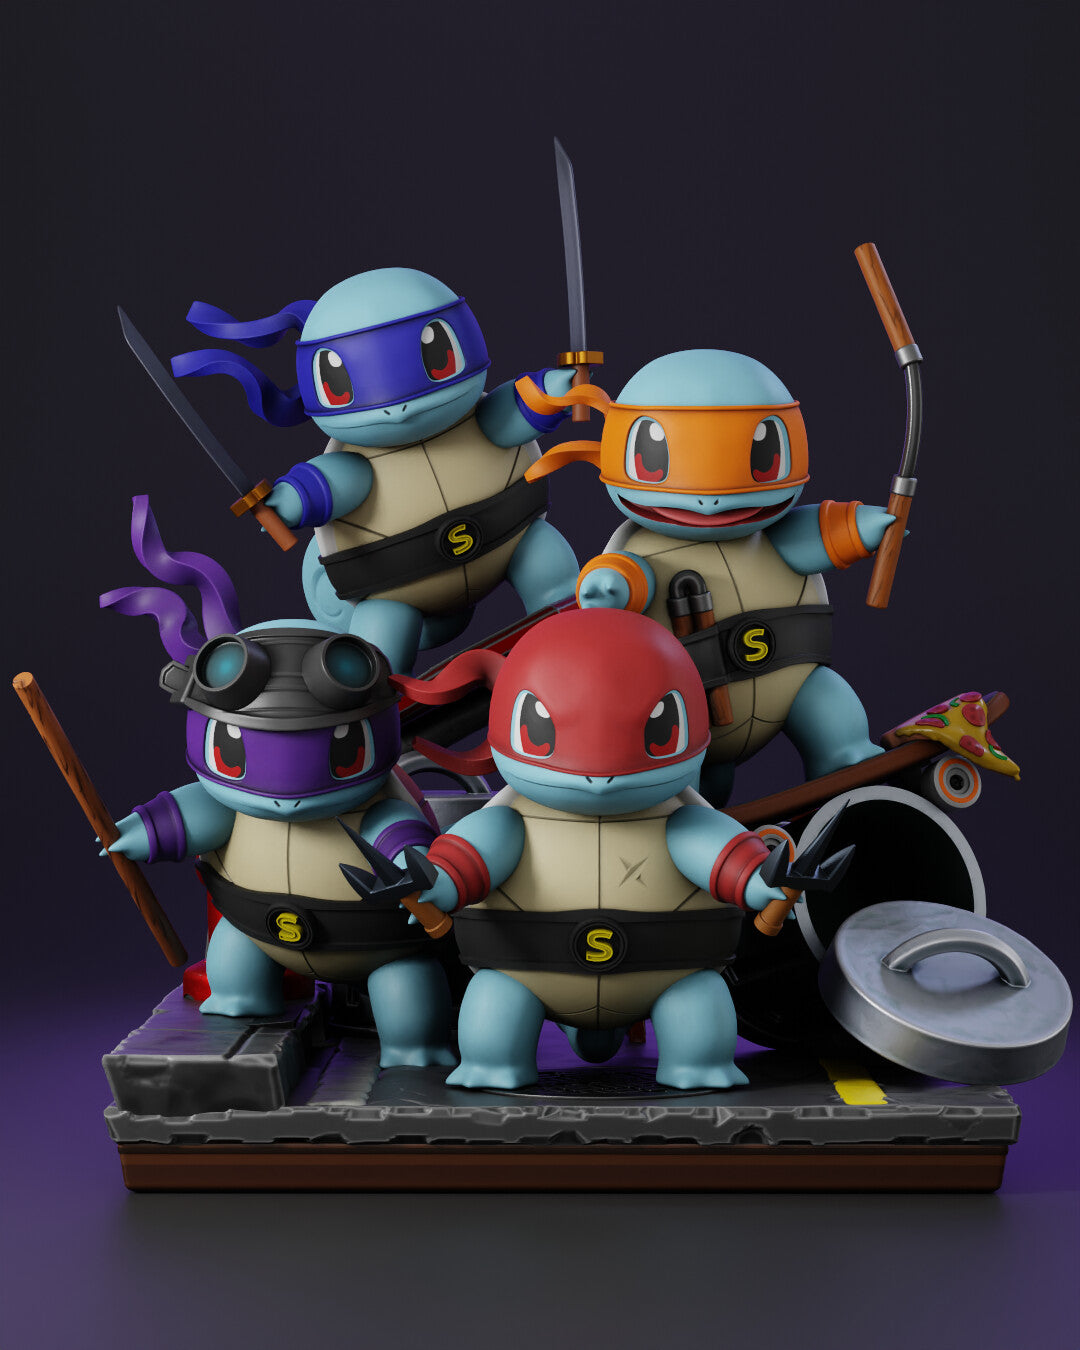 Teenage Mutant Ninja Turtles STL File 3D Printing Pokemon Style Digital STL File Anime Figure 0120